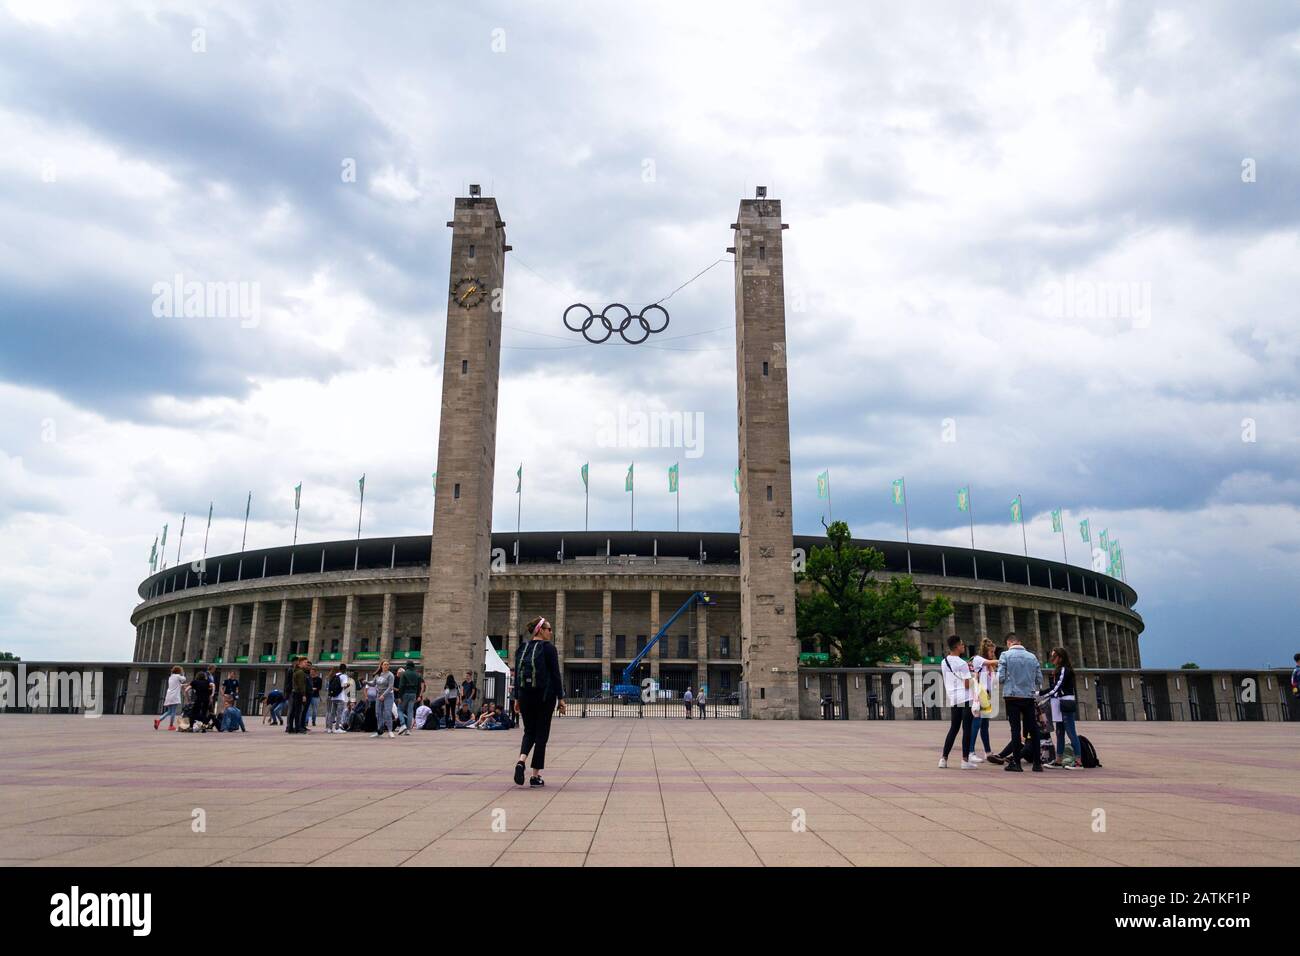 Berlino, GERMANIA - 15 MAGGIO 2018: Persone di fronte allo stadio olimpico dal 1936 il 15 maggio 2018 a Berlino, Germania. Foto Stock